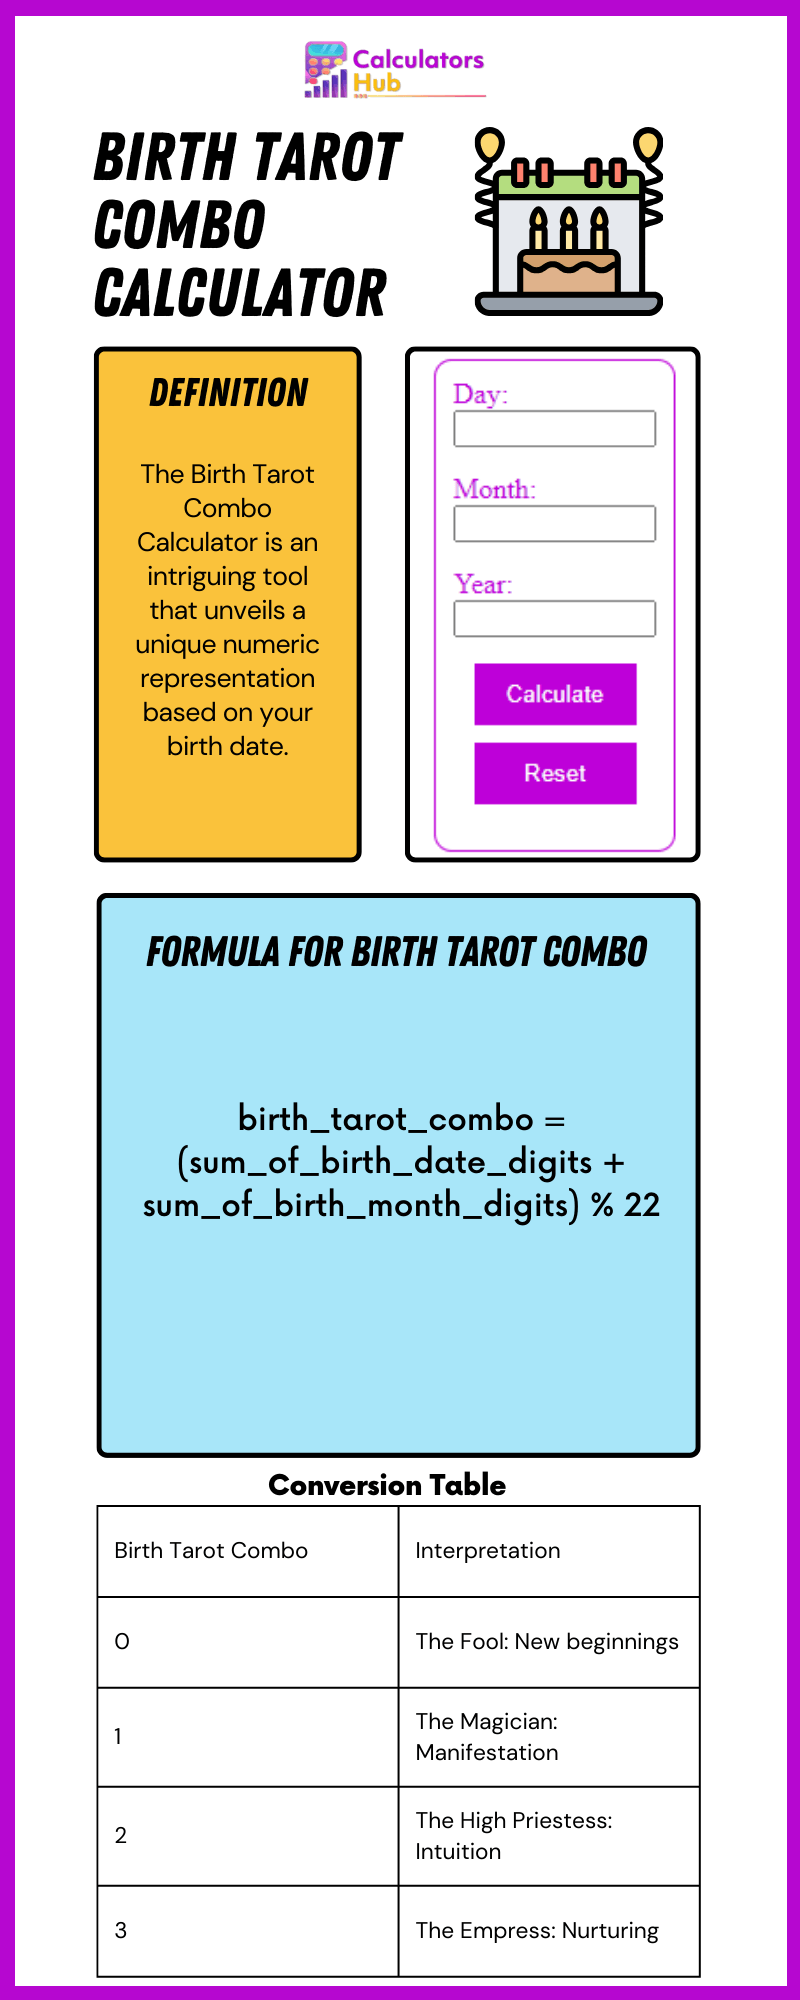 Birth Tarot Combo Calculator